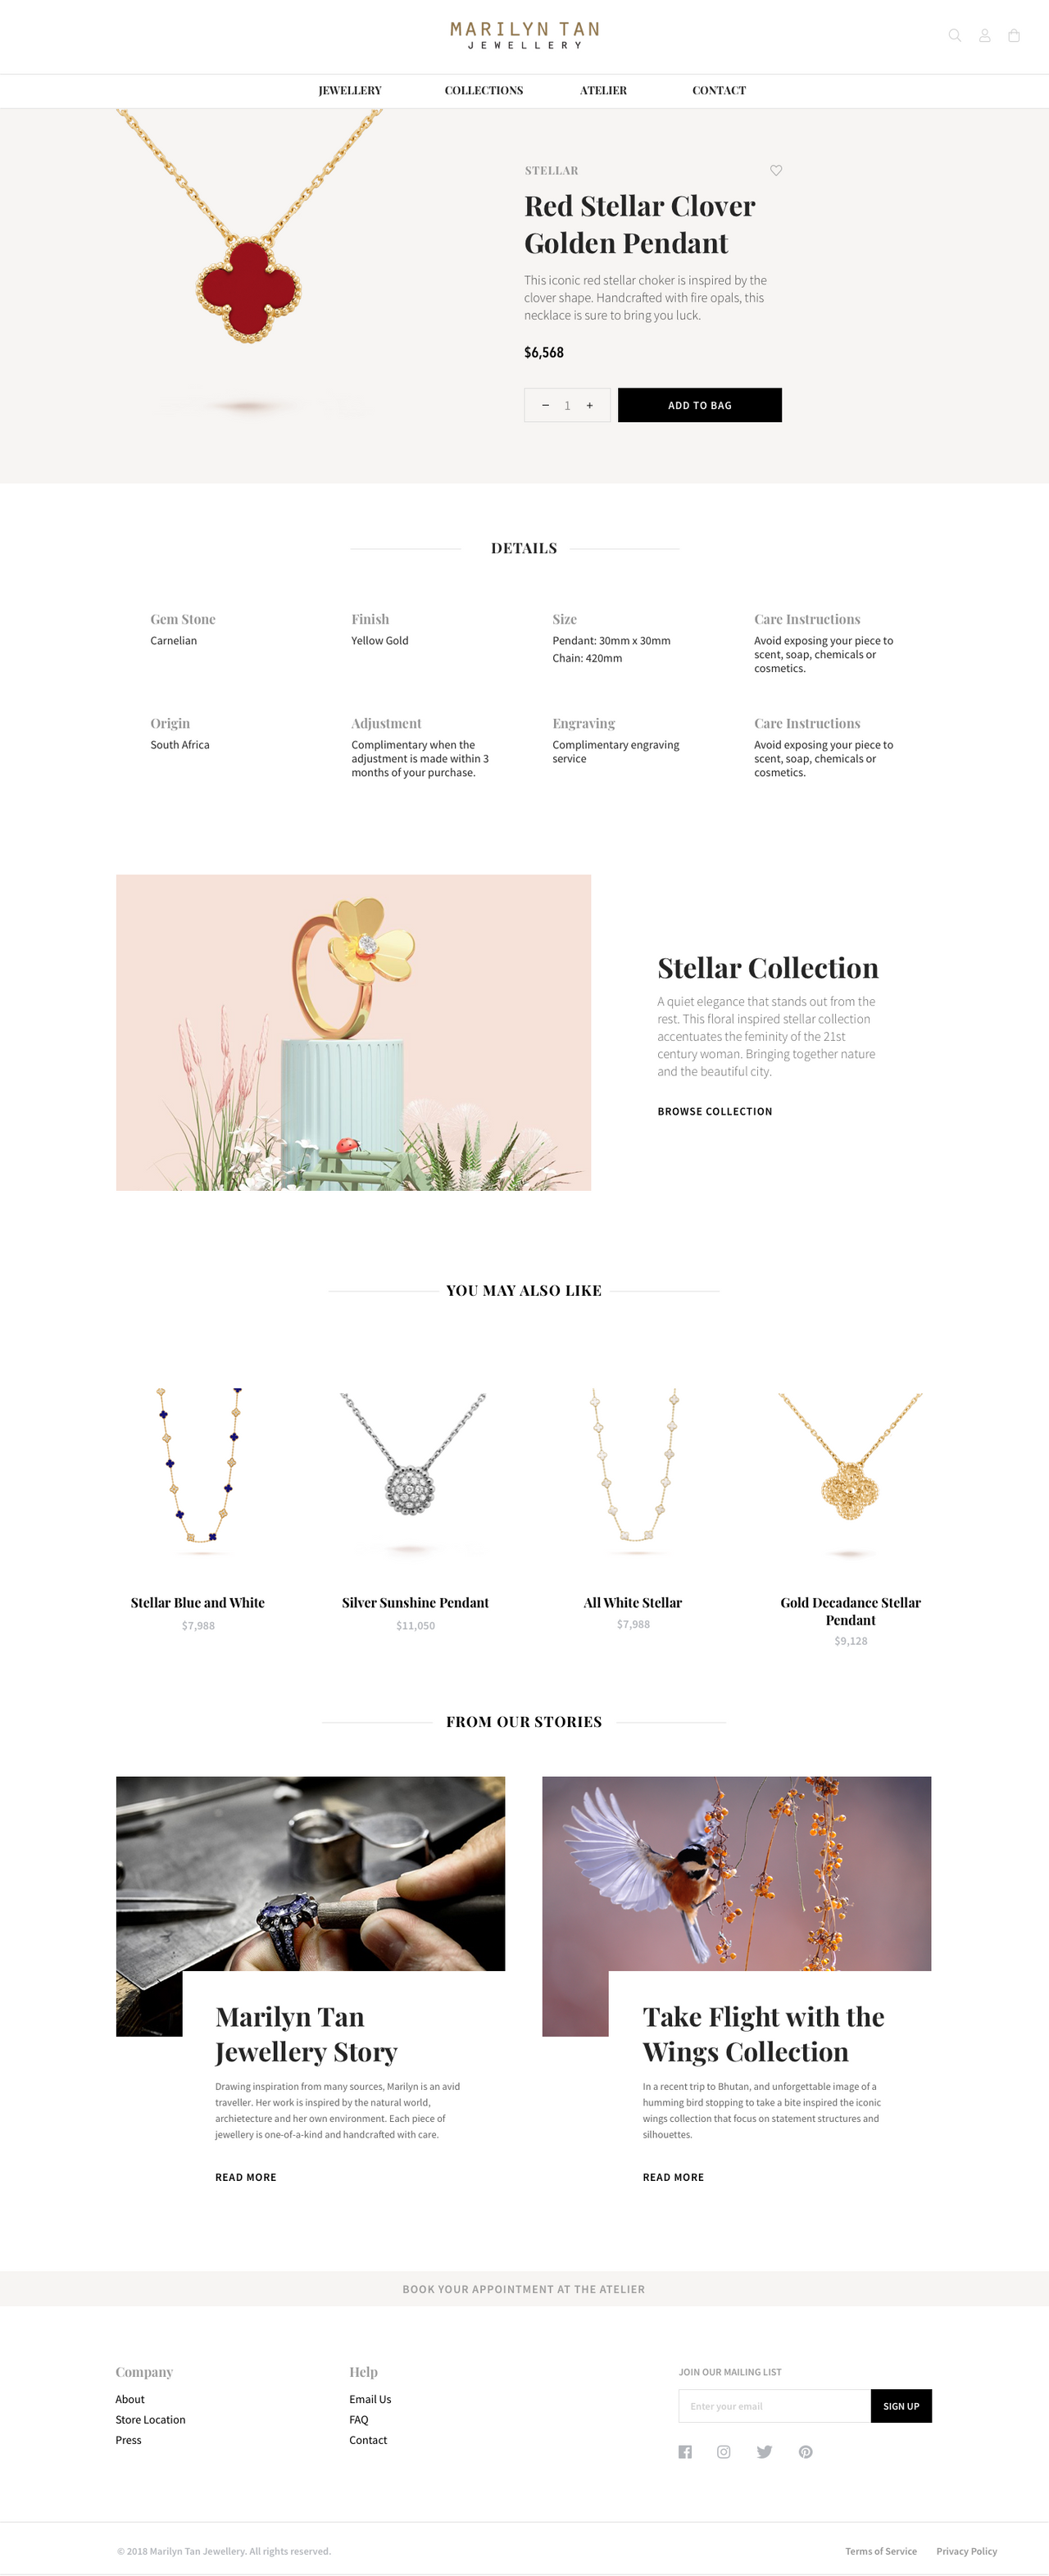 Marilyn Tan jewellery website showcase